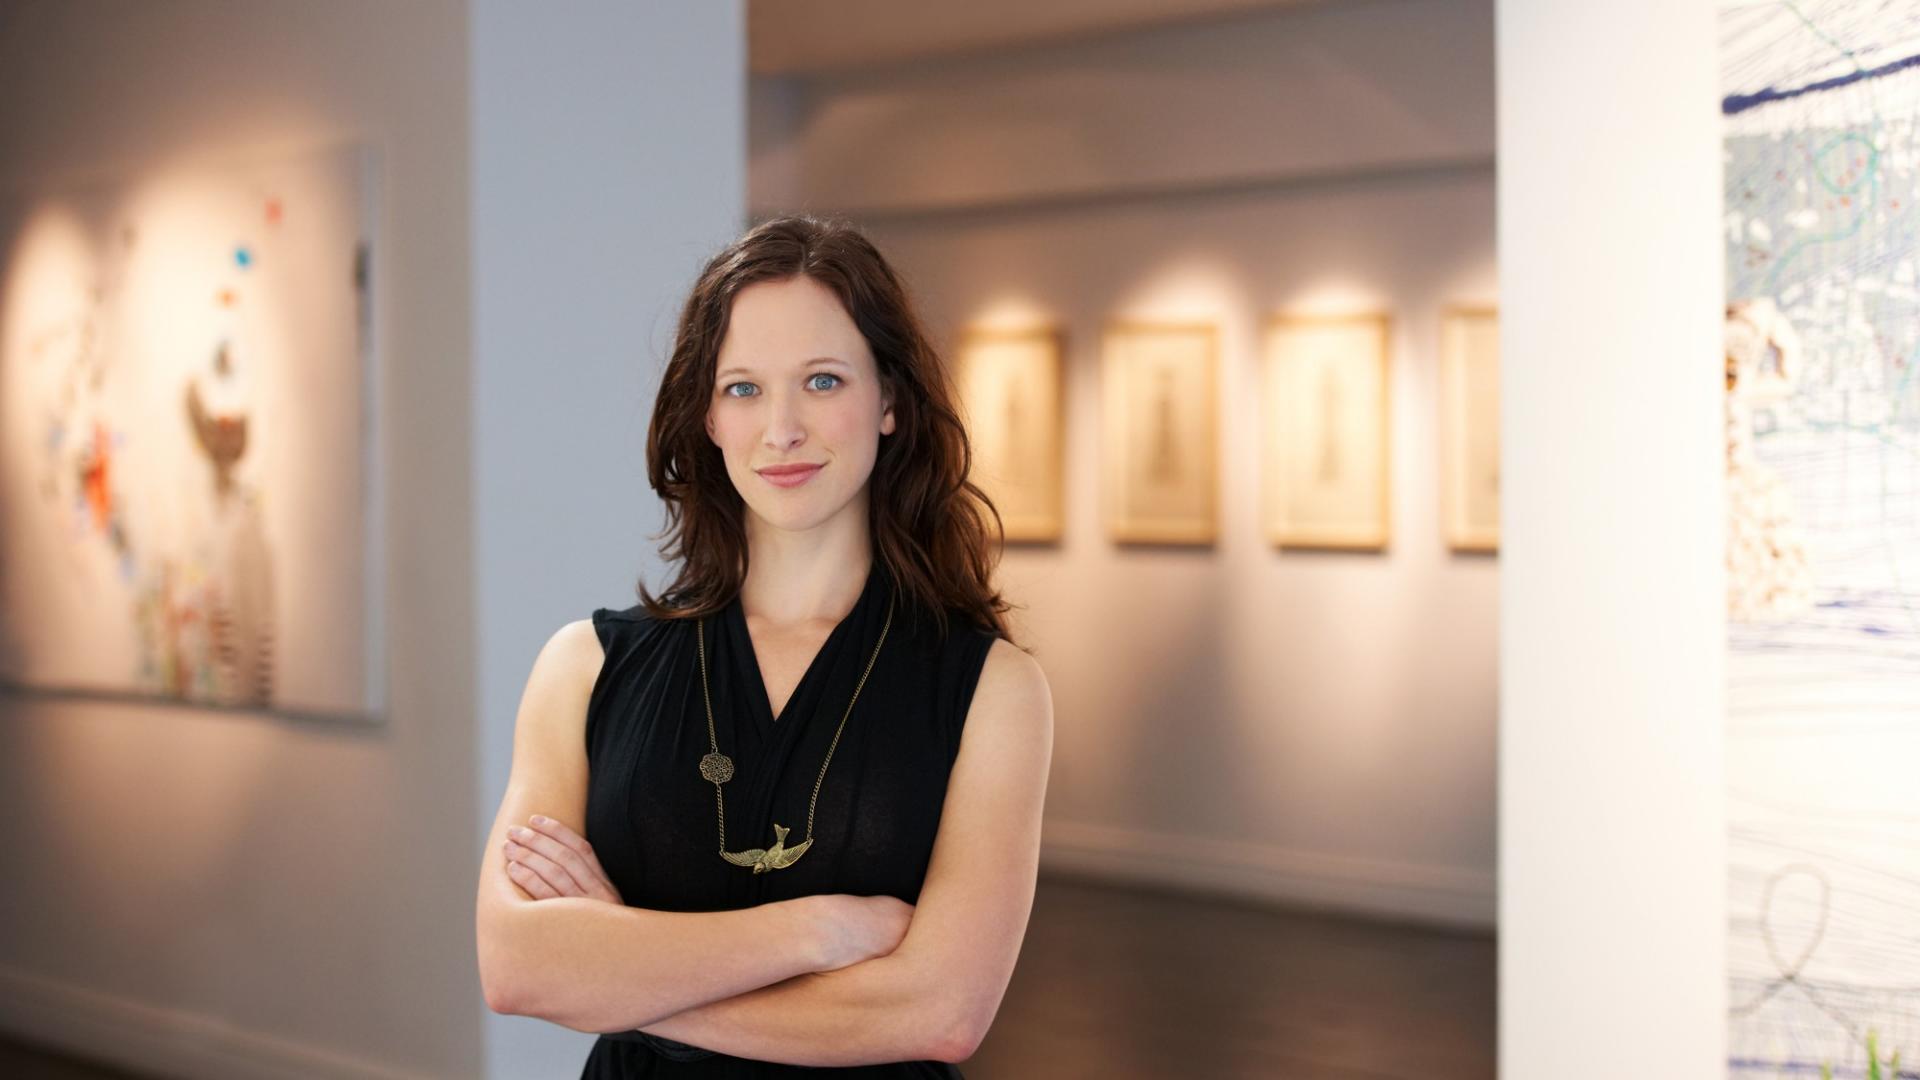 Eine junge Frau steht in einer Galerie und im Hintergrund sind Kunstgemälde zu sehen.